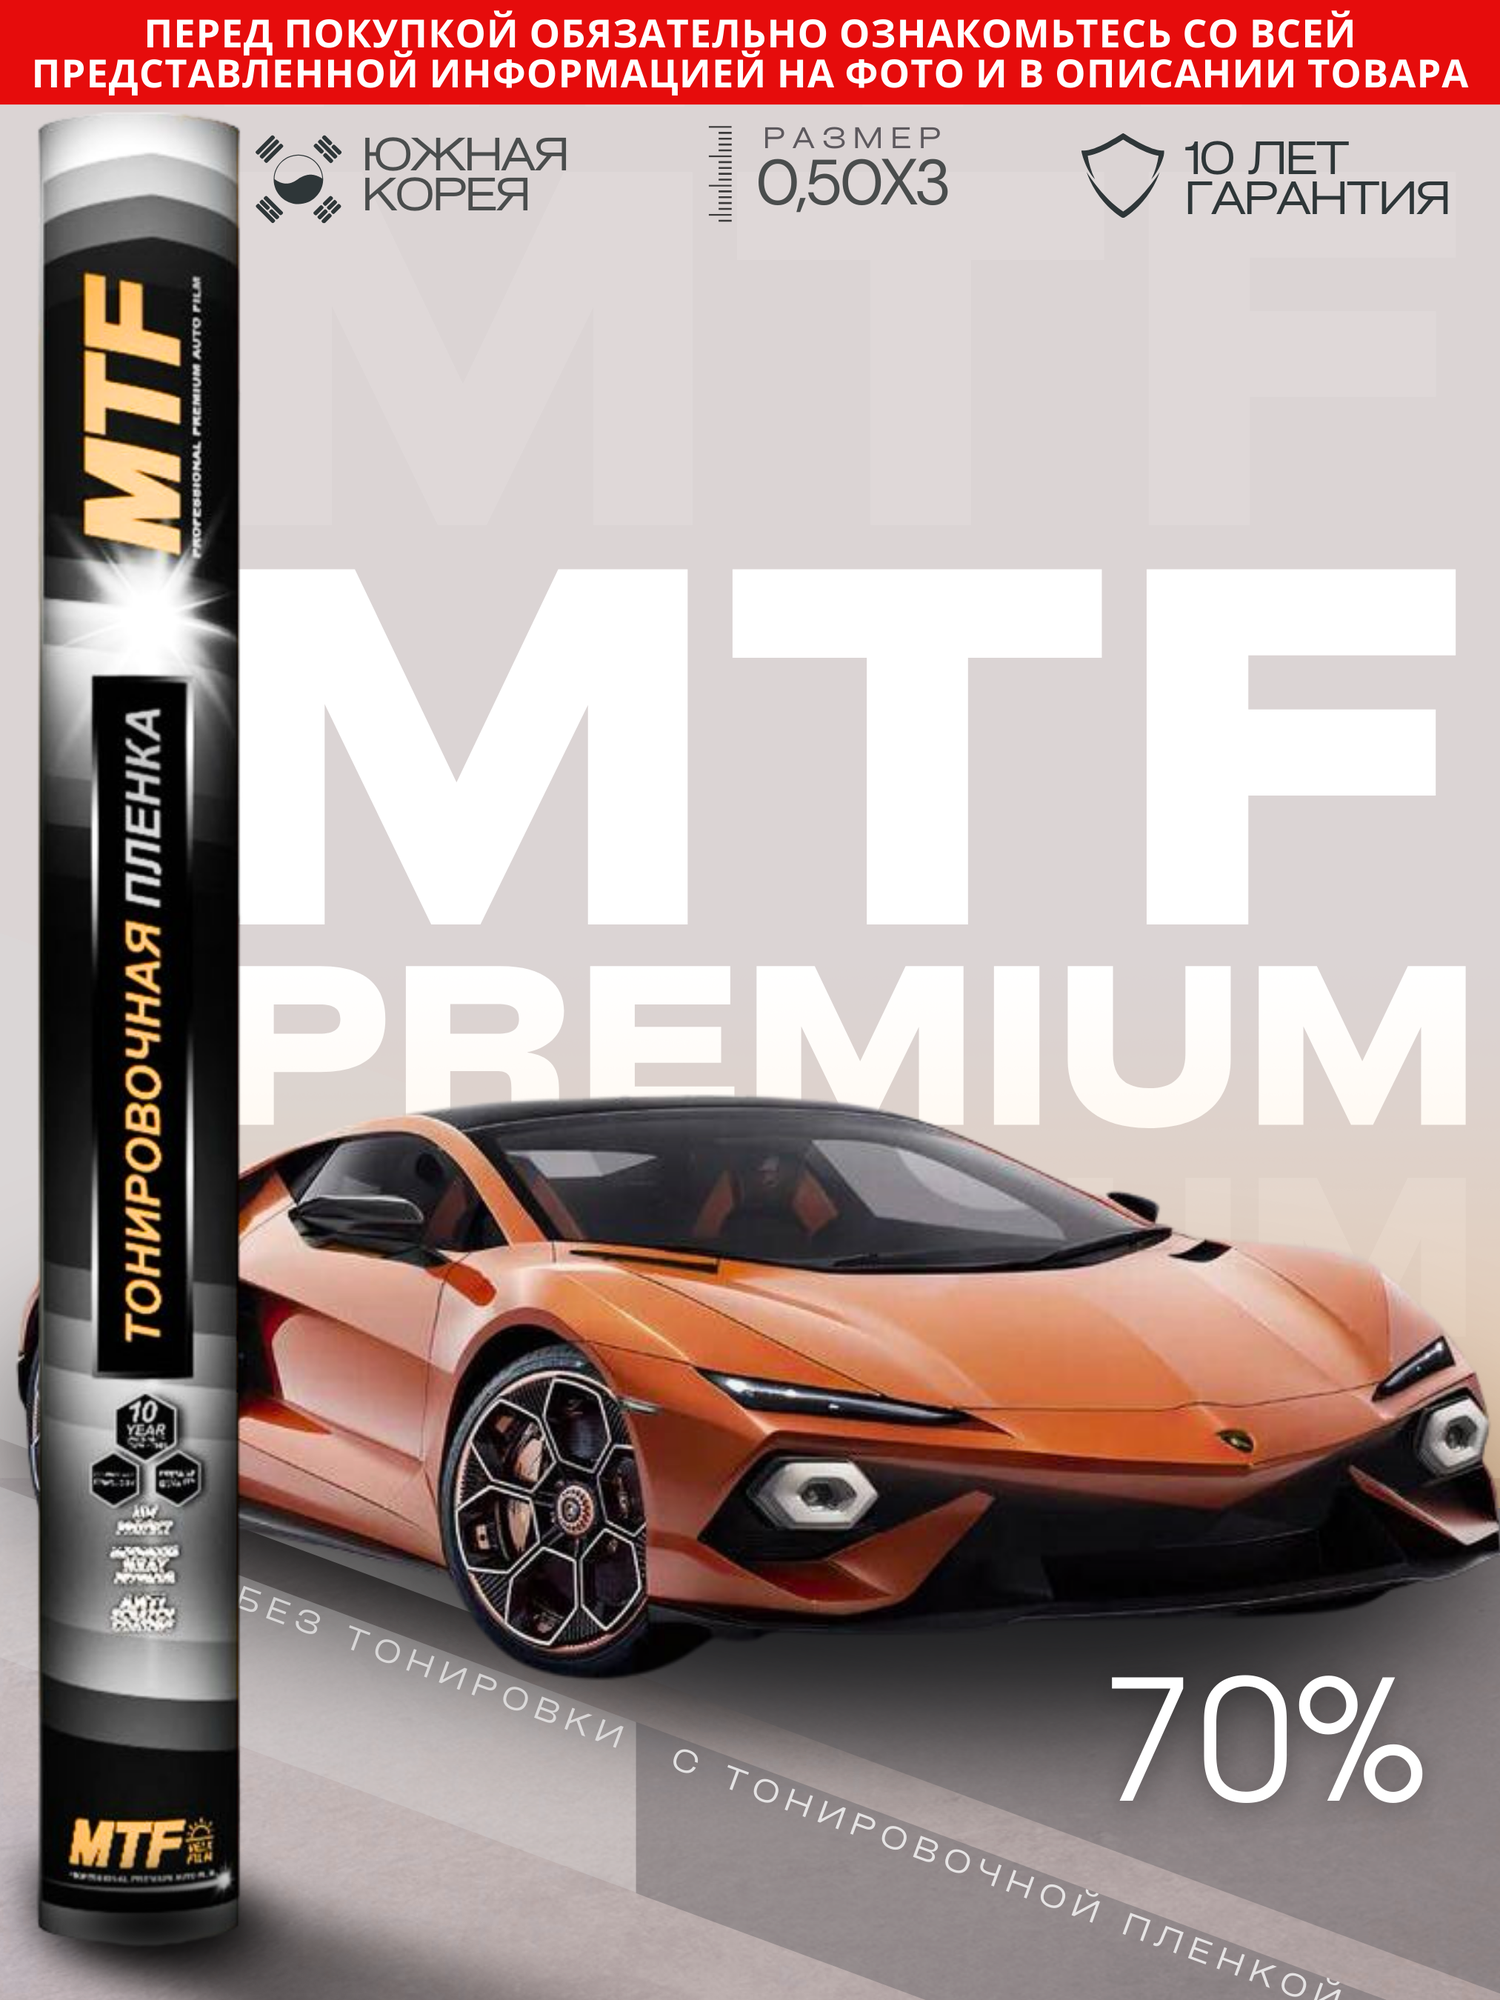 Пленка тонировочная "MTF Original" в тубе "Premium" 70% Сharcol (0.5м х 3м)